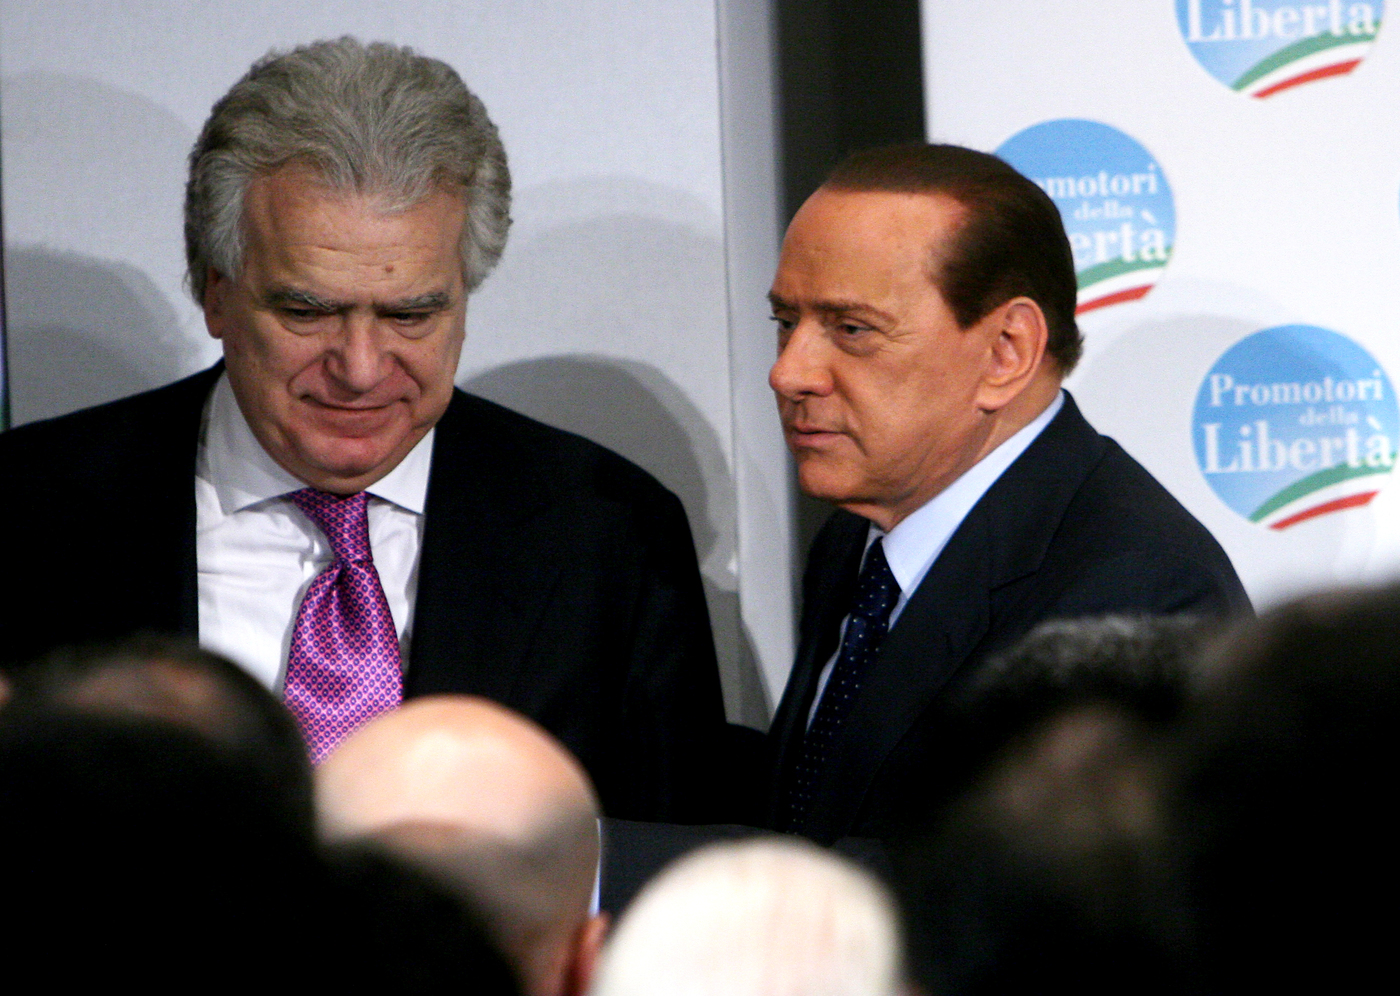 Lettera del condannato Verdini a Confalonieri e a Dell'Utri (condannato anche lui): "Così eleggiamo Berlusconi"